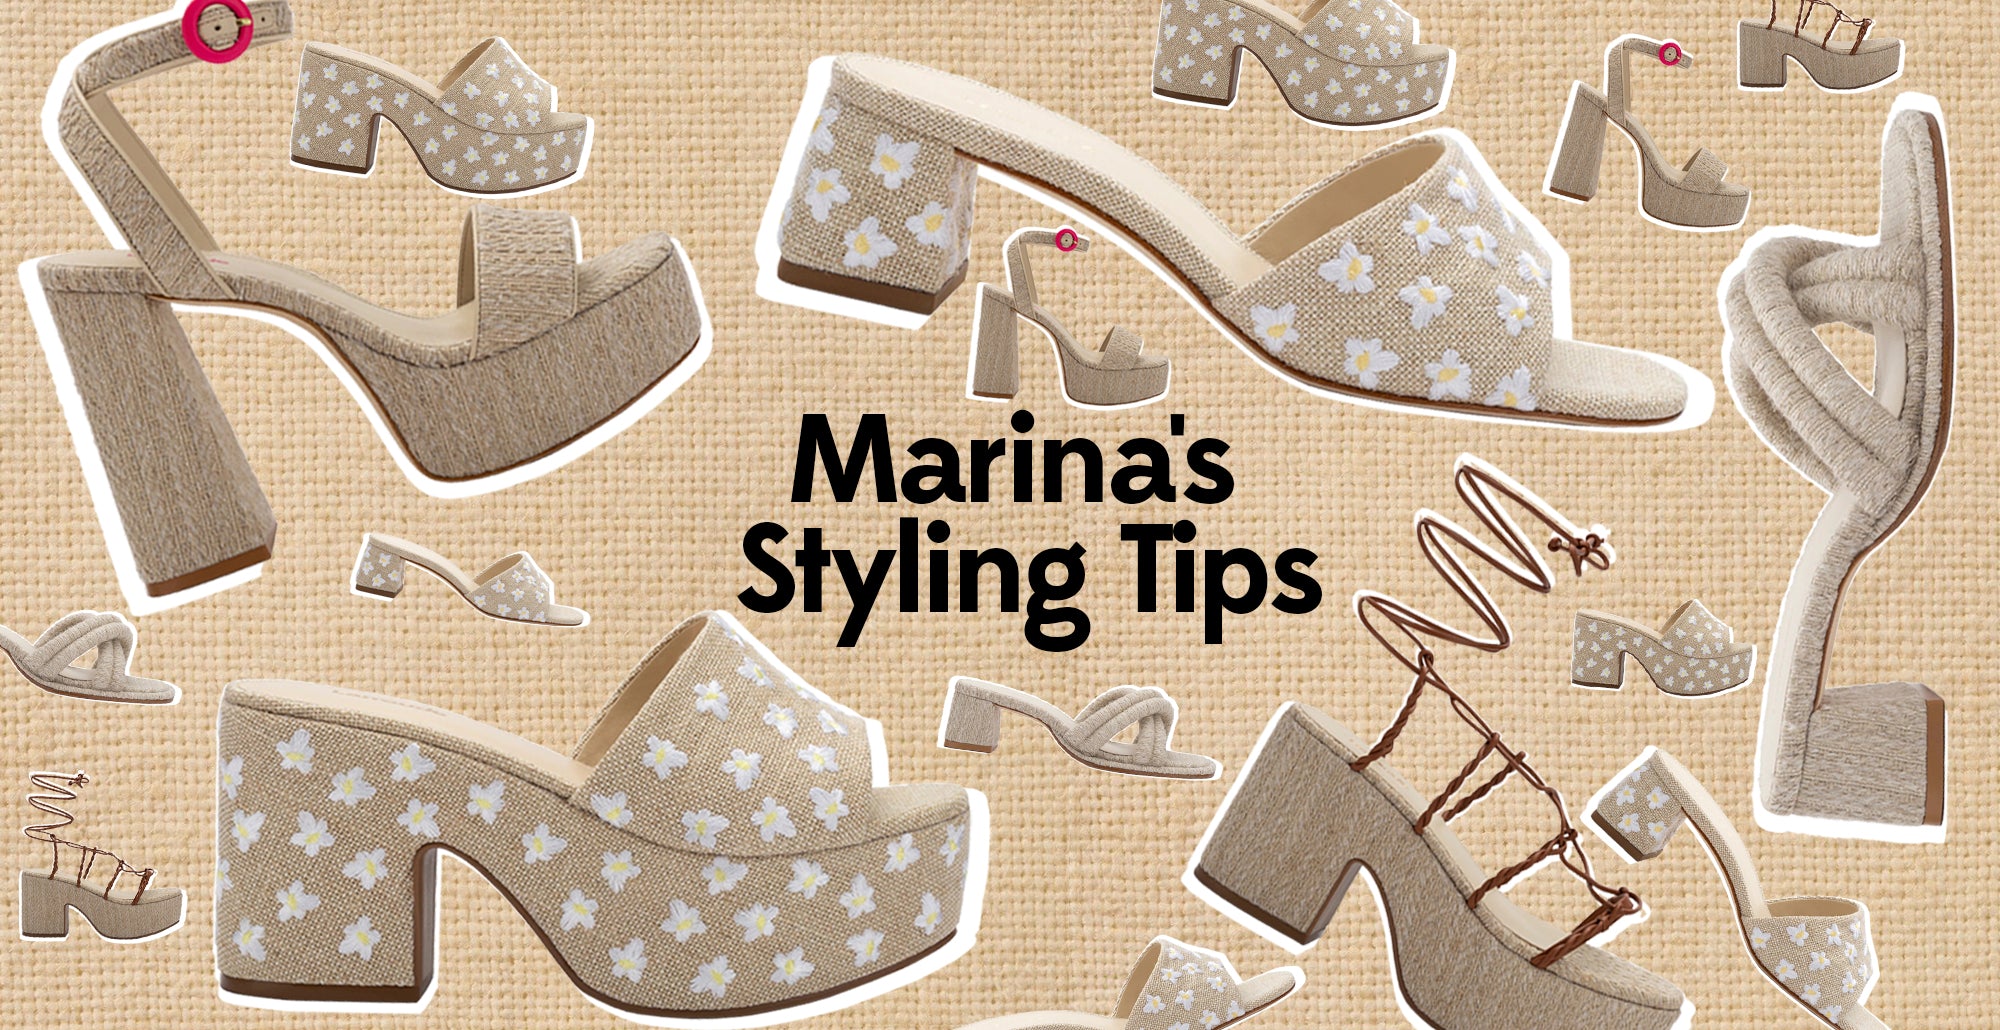 Marina's Styling Tips